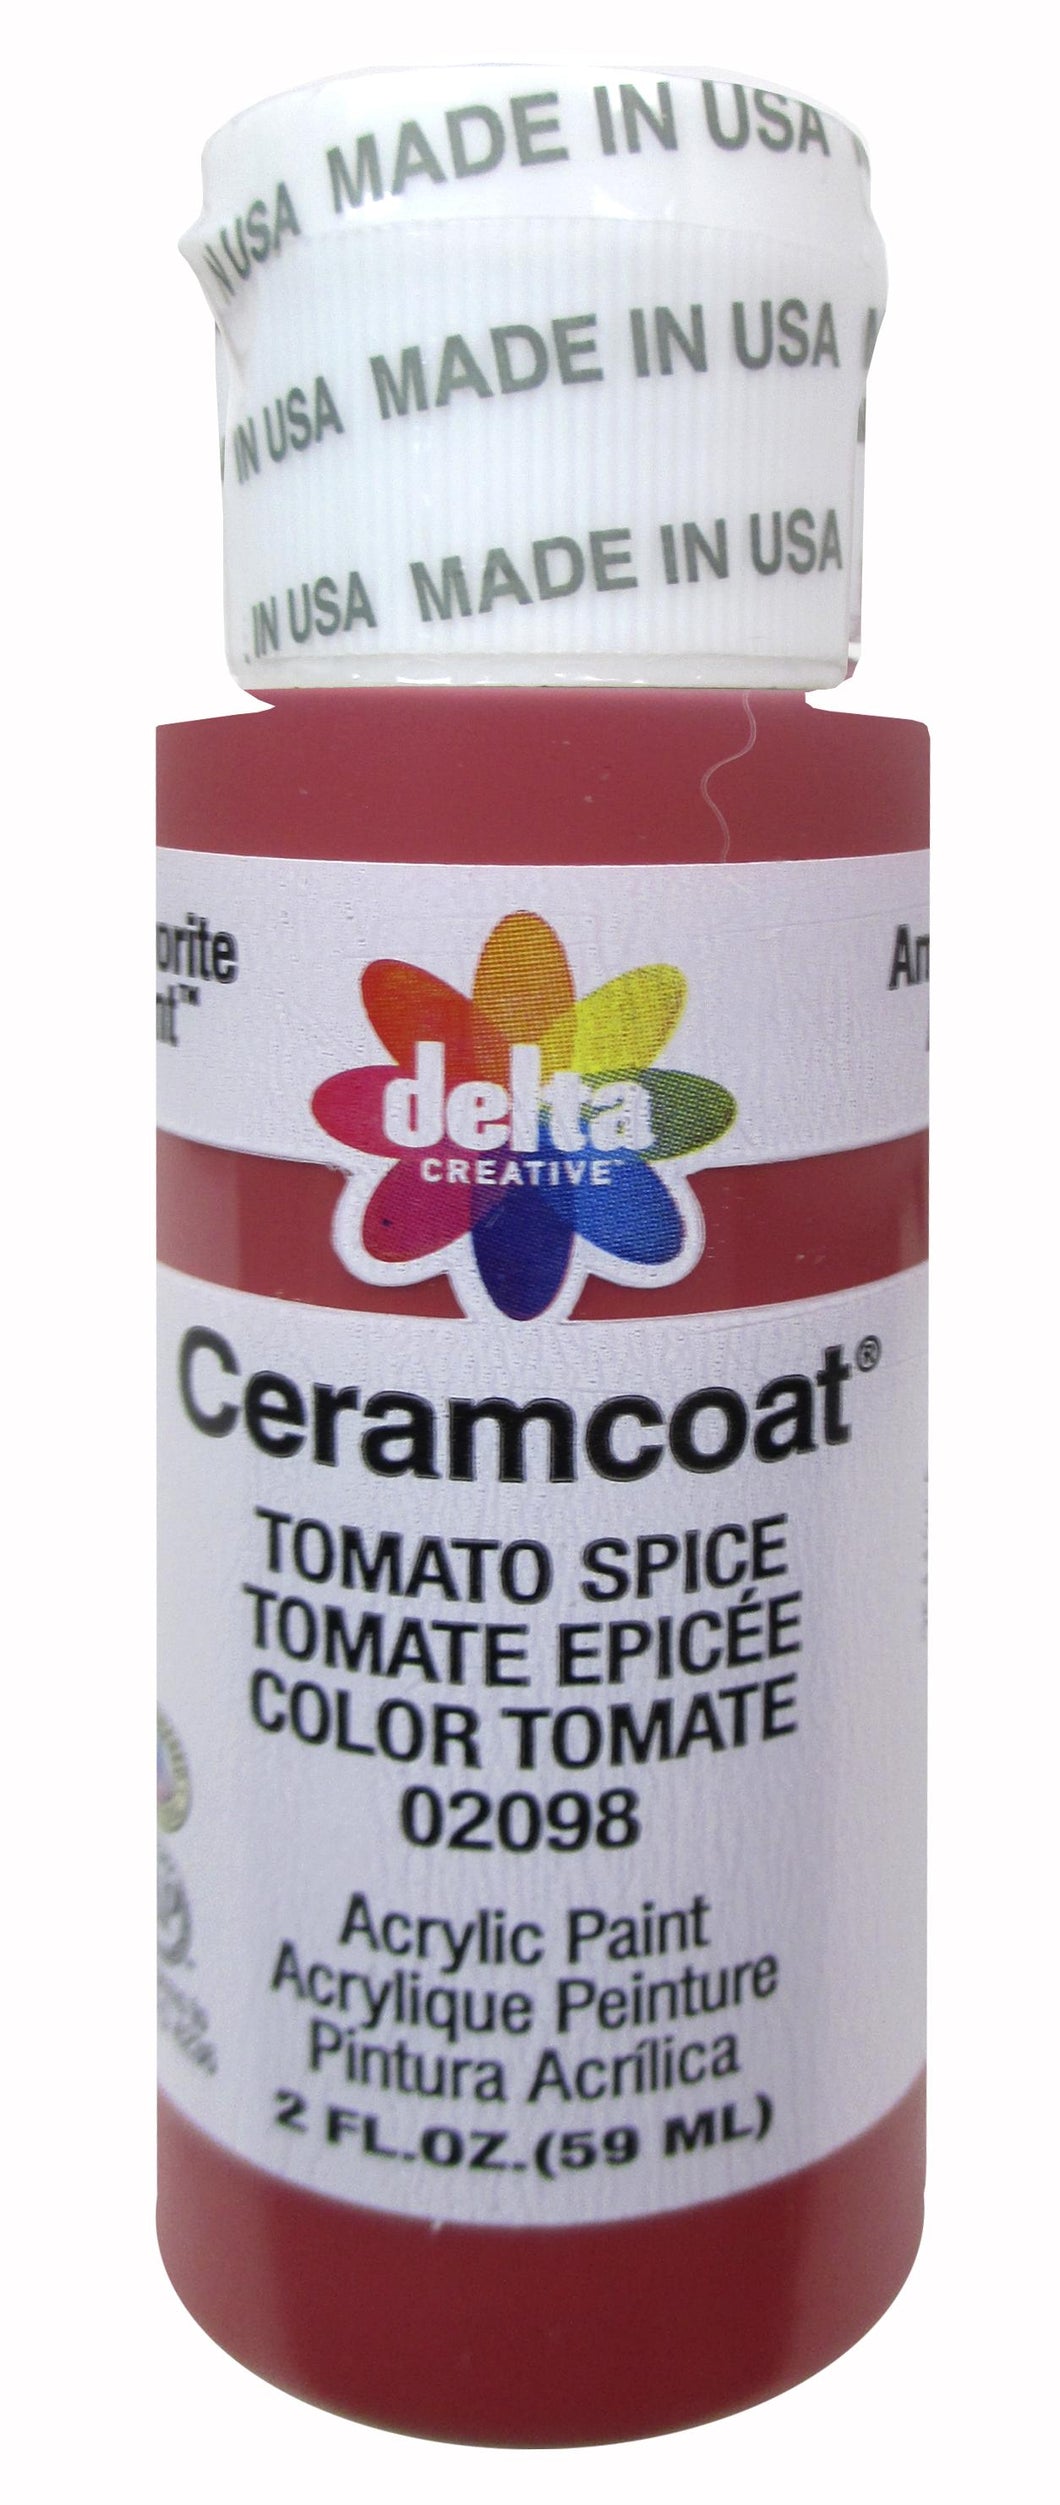 CERAMCOAT Acrylic Paint 59ml 2floz  - Tomato Spice